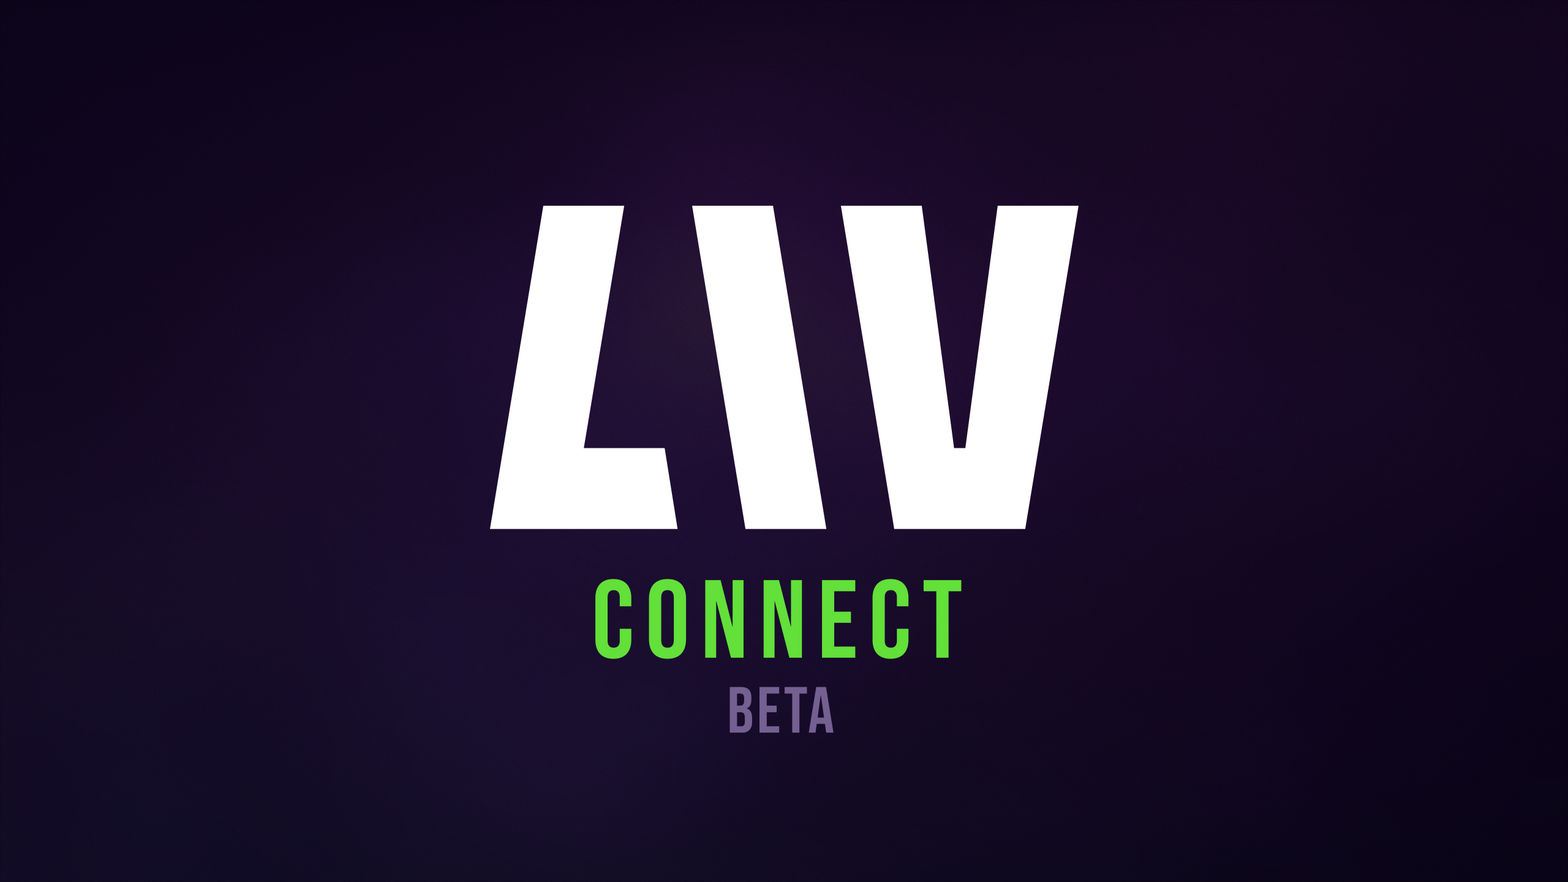 LIV Connect